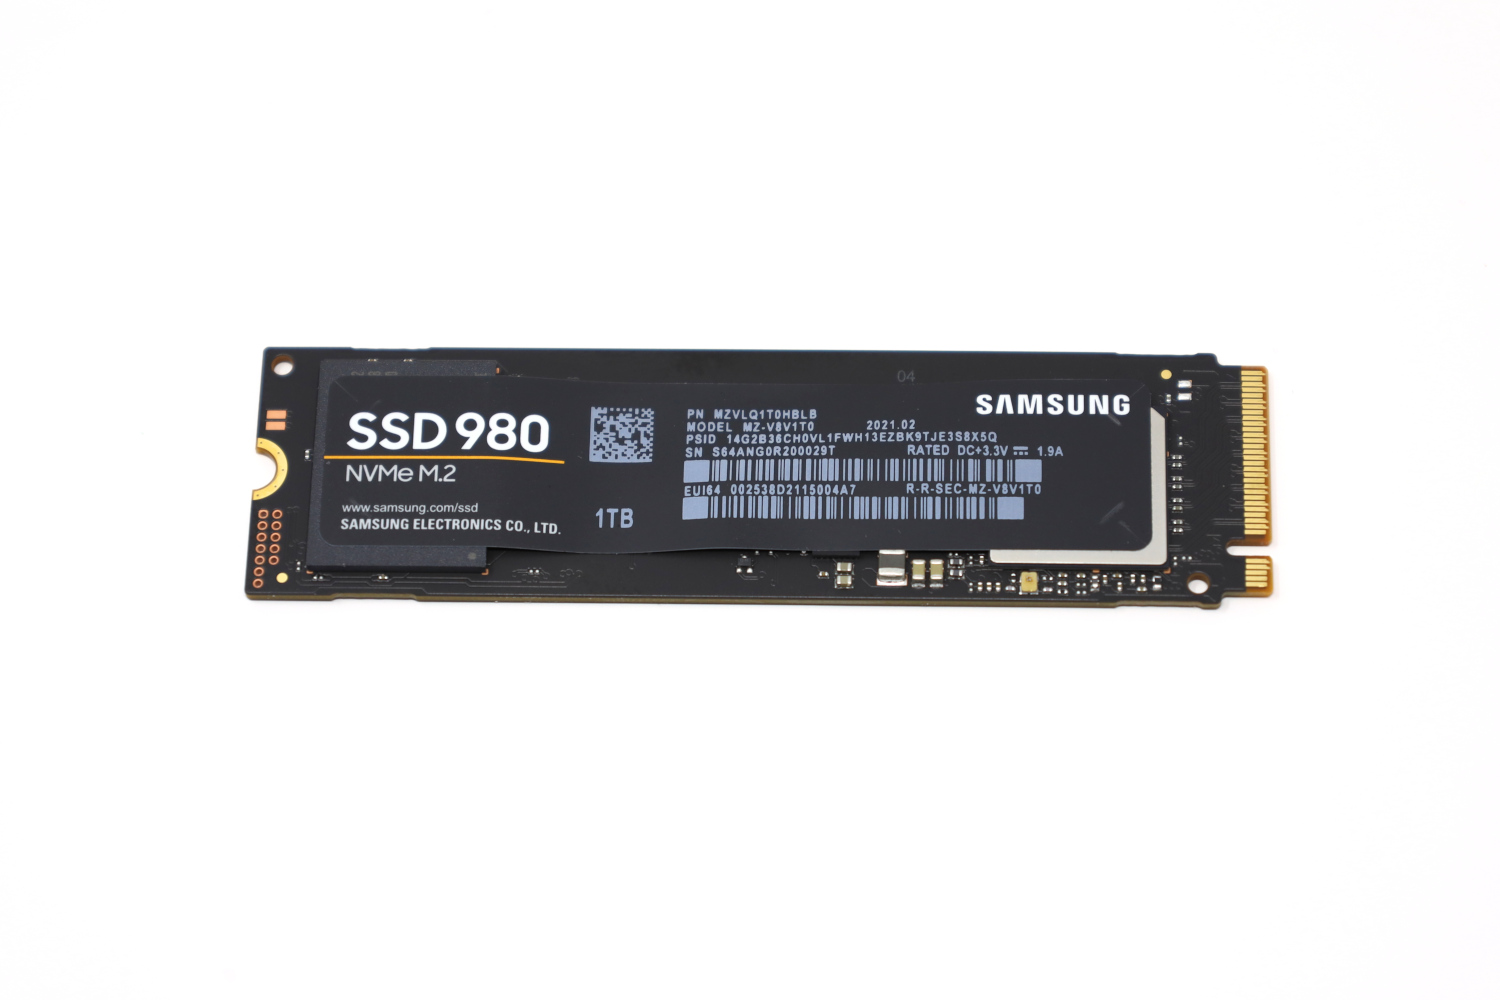 Hofte lodret Lykkelig Samsung 980 1TB DRAM-less NVMe SSD Review - ServeTheHome